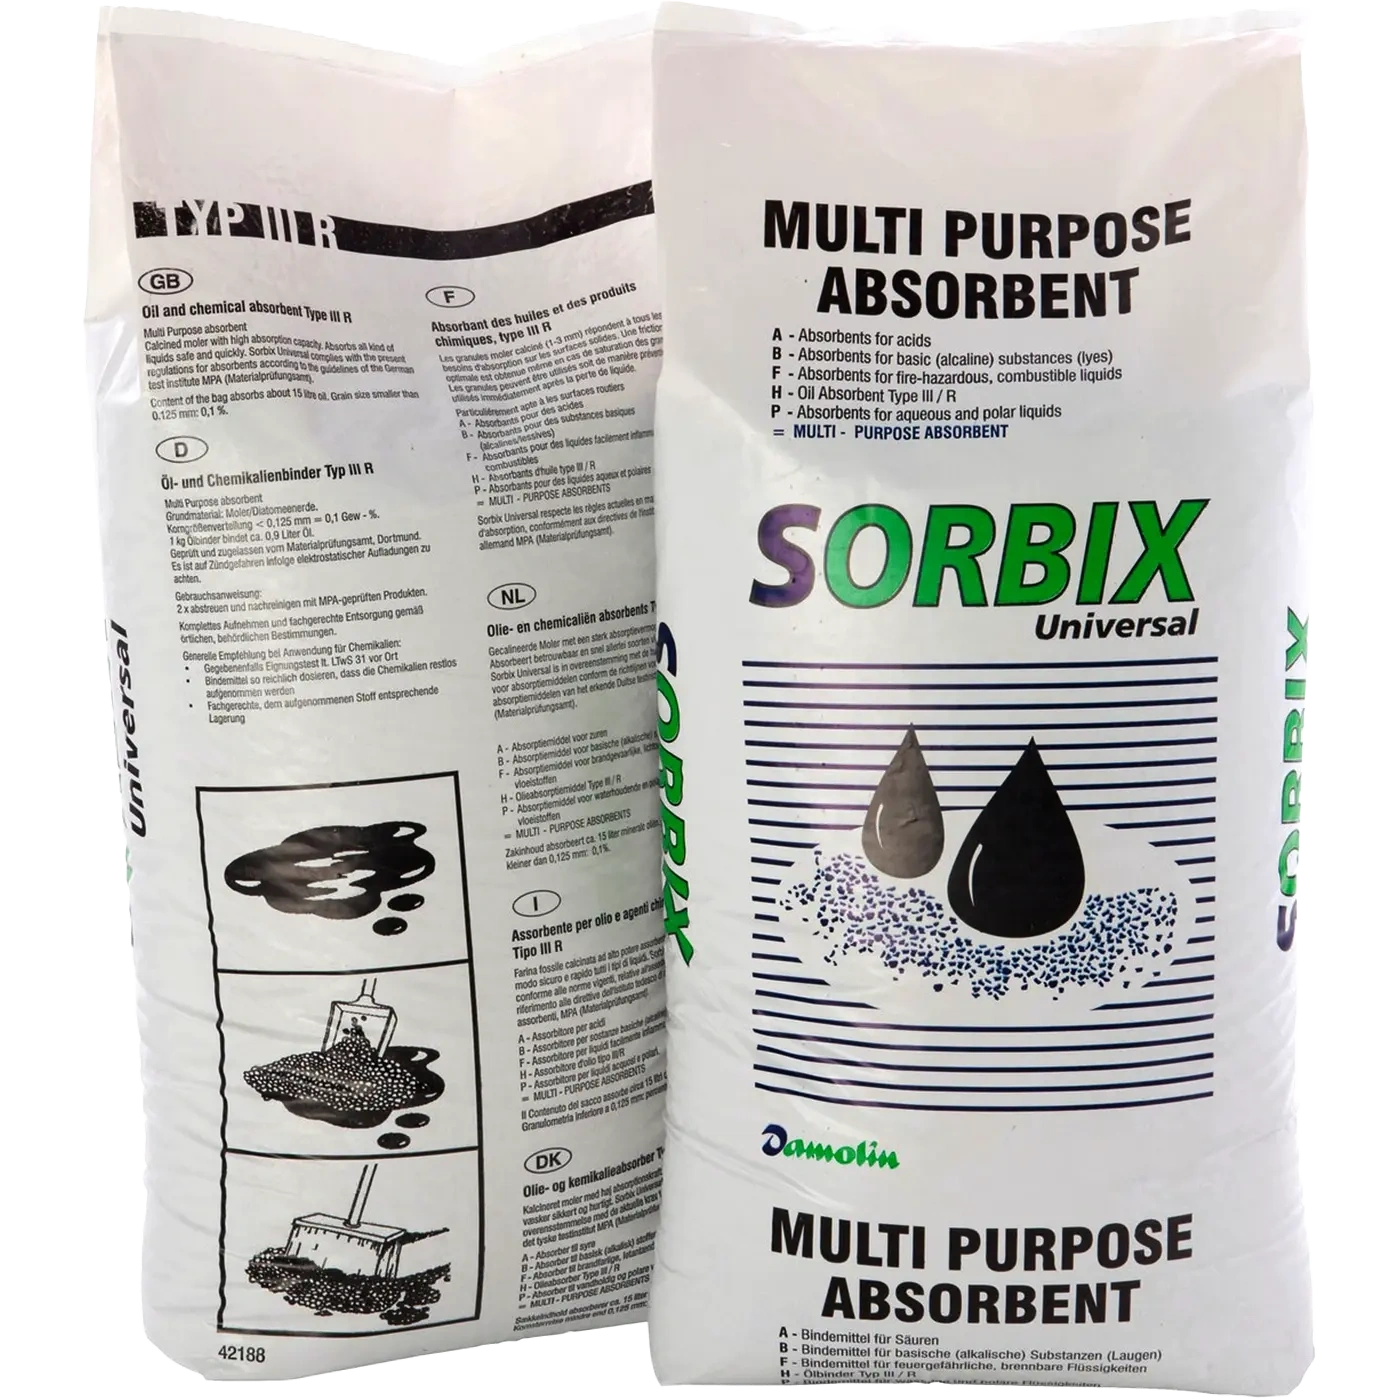 SORBIX Standard universaalne absorbent, 20kg/40L